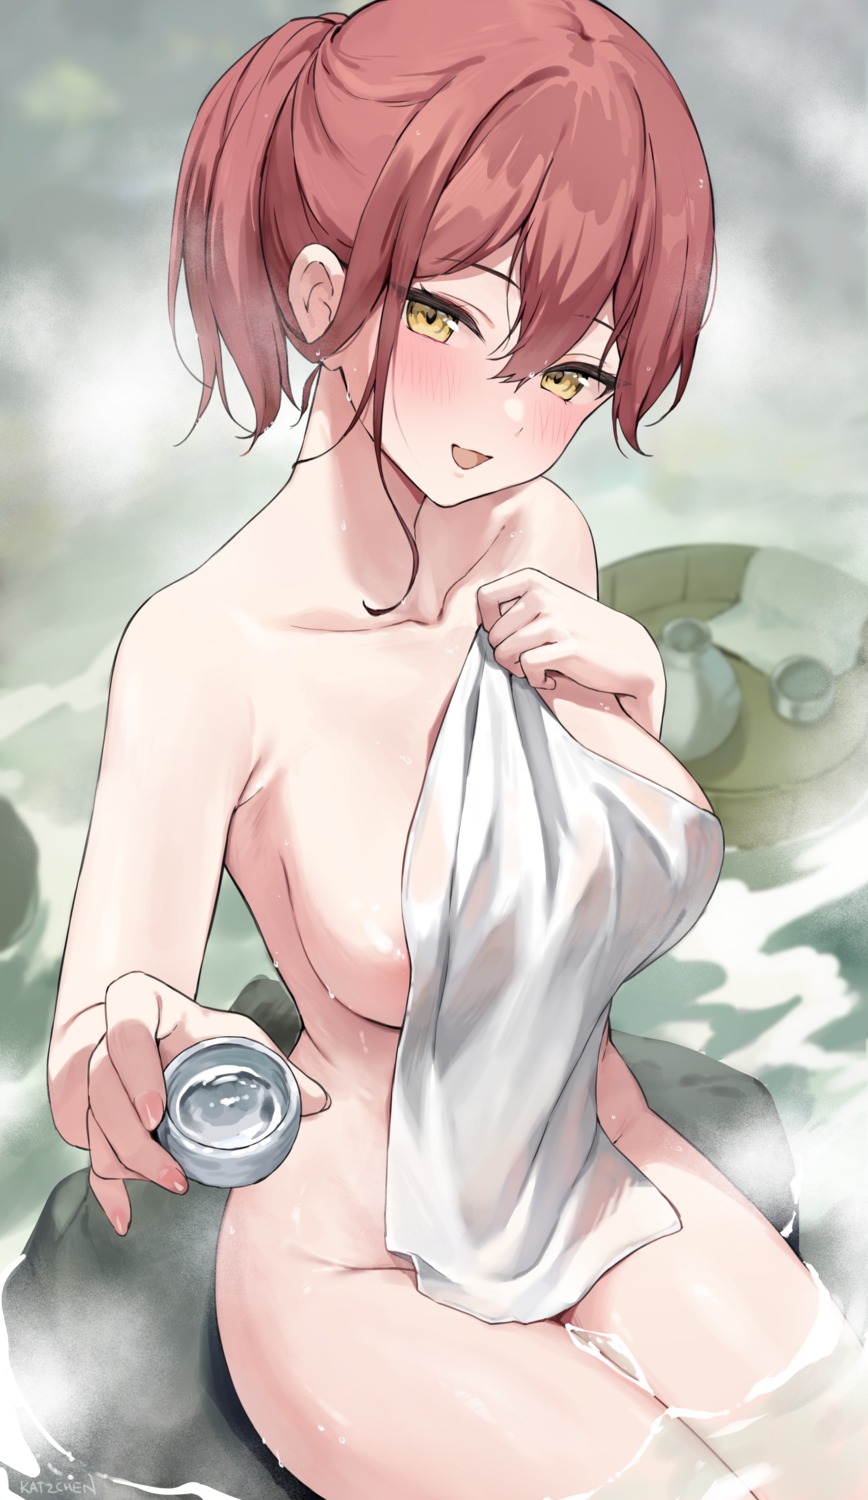 kaetzchen naked onsen sake towel wet